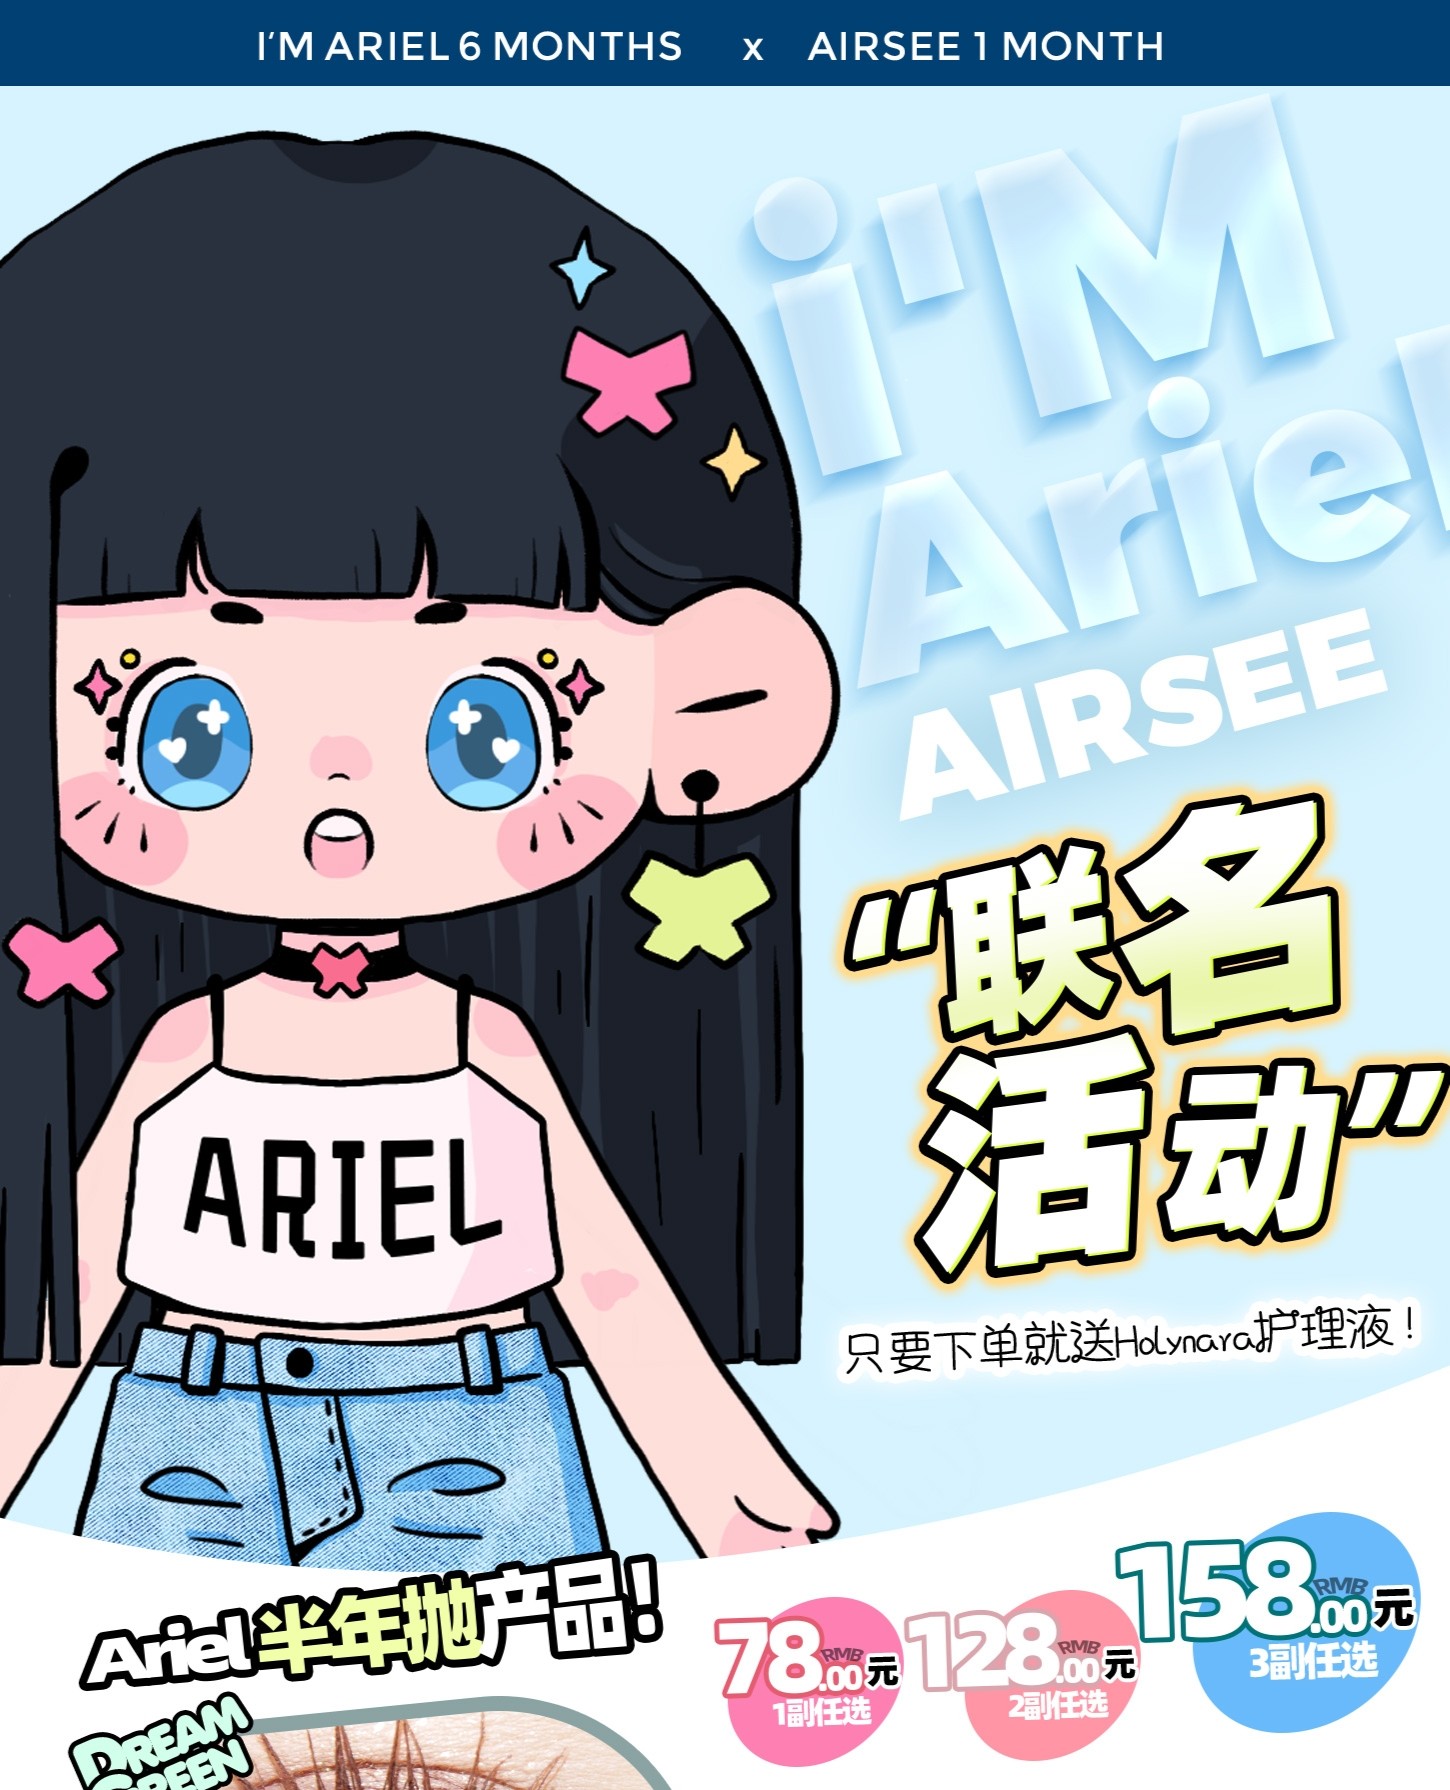 【月抛/半年抛】Airsee·imAriel 5.20 以爱之名 新品上市